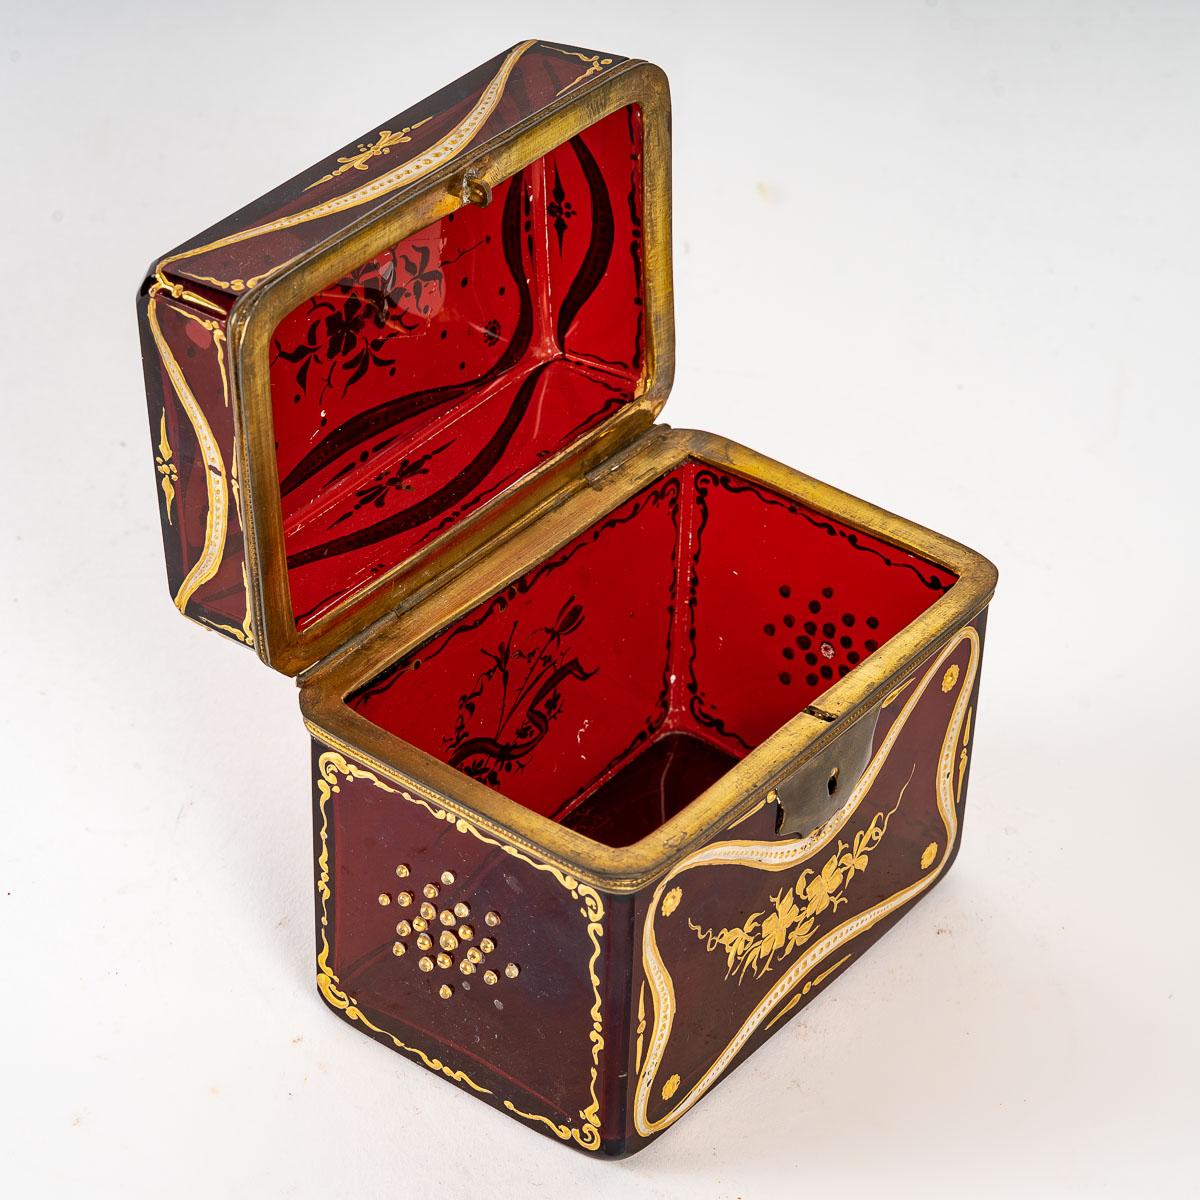 Boîte en cristal de Bohème, 19ème siècle
Boîte en cristal de Bohême, émaillée blanc et or, vers 1880, période Napoléon III, montée en laiton doré.
H : 10,5 cm, L : 11,5 cm, P : 7,5 cm
réf. 3356